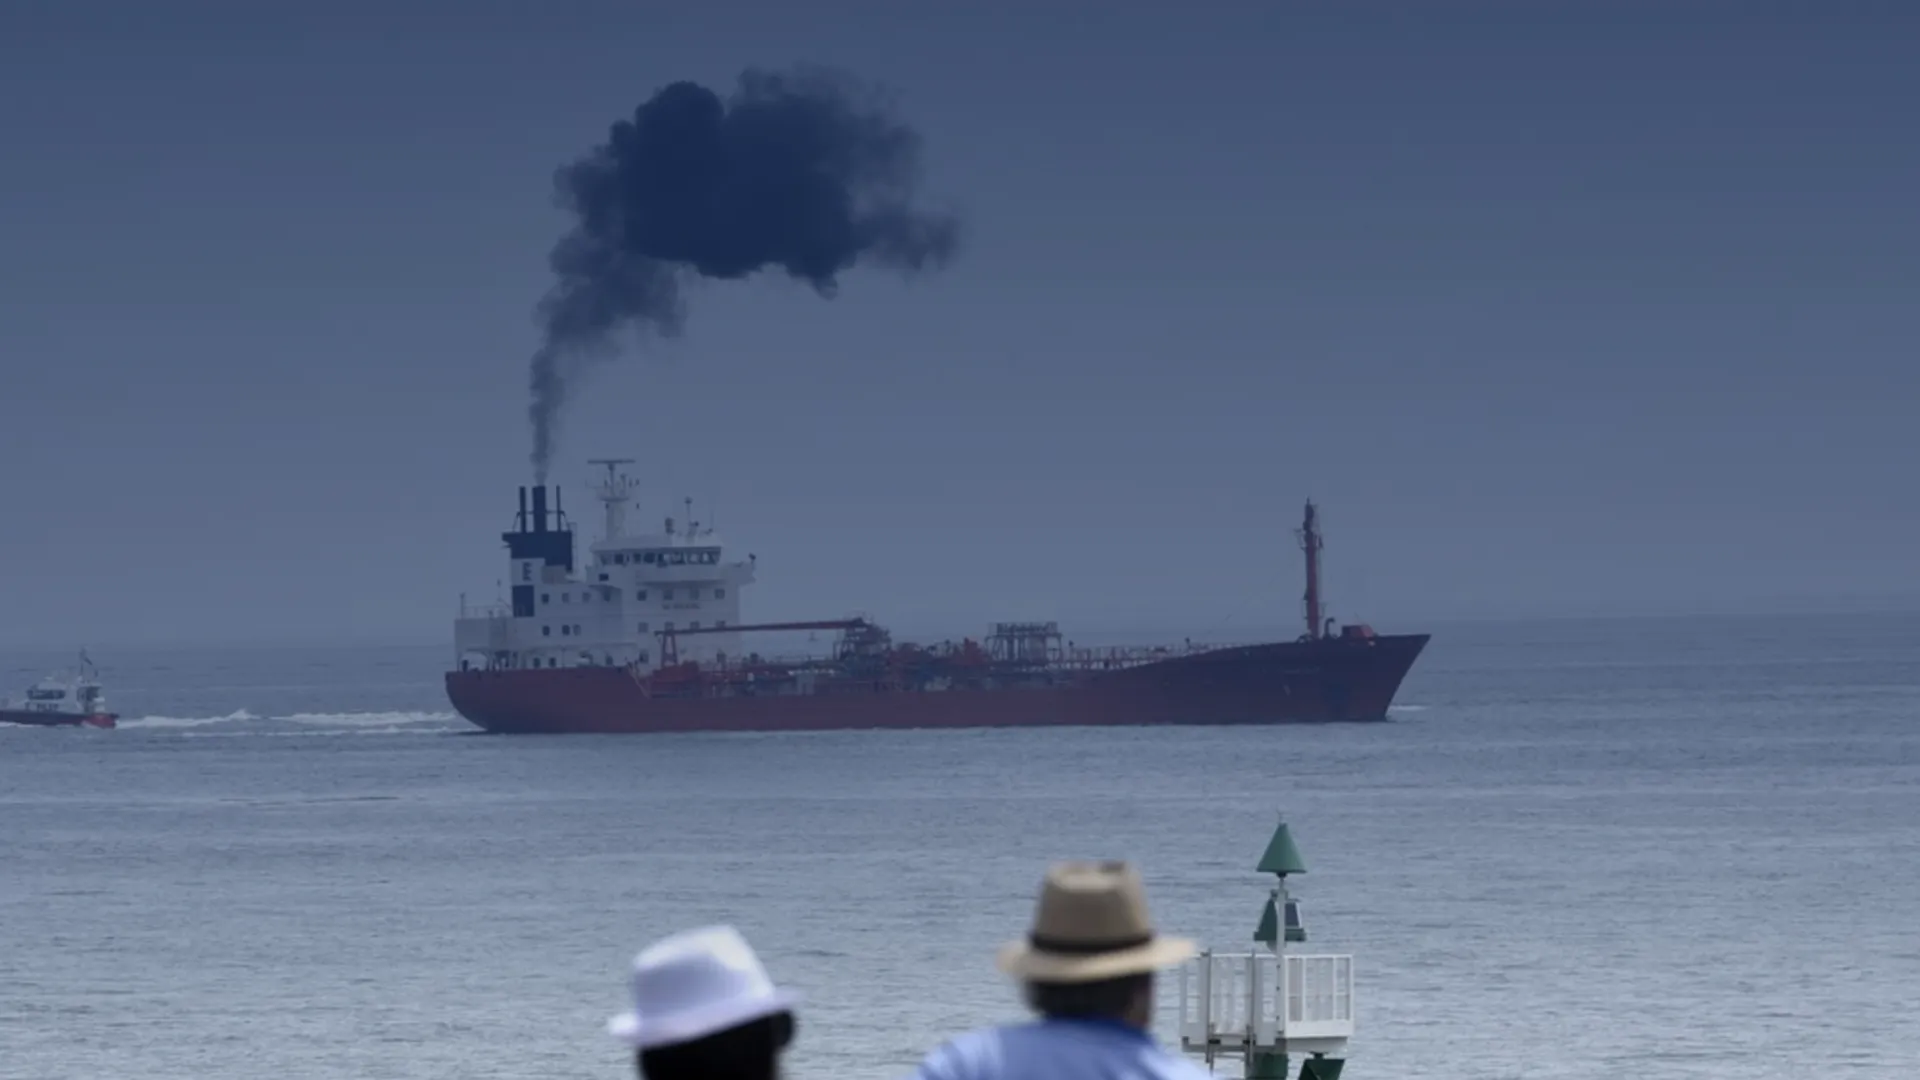 Het schip op deze afbeelding staat symbool voor de PM-reductieproducten in de scheepvaart.